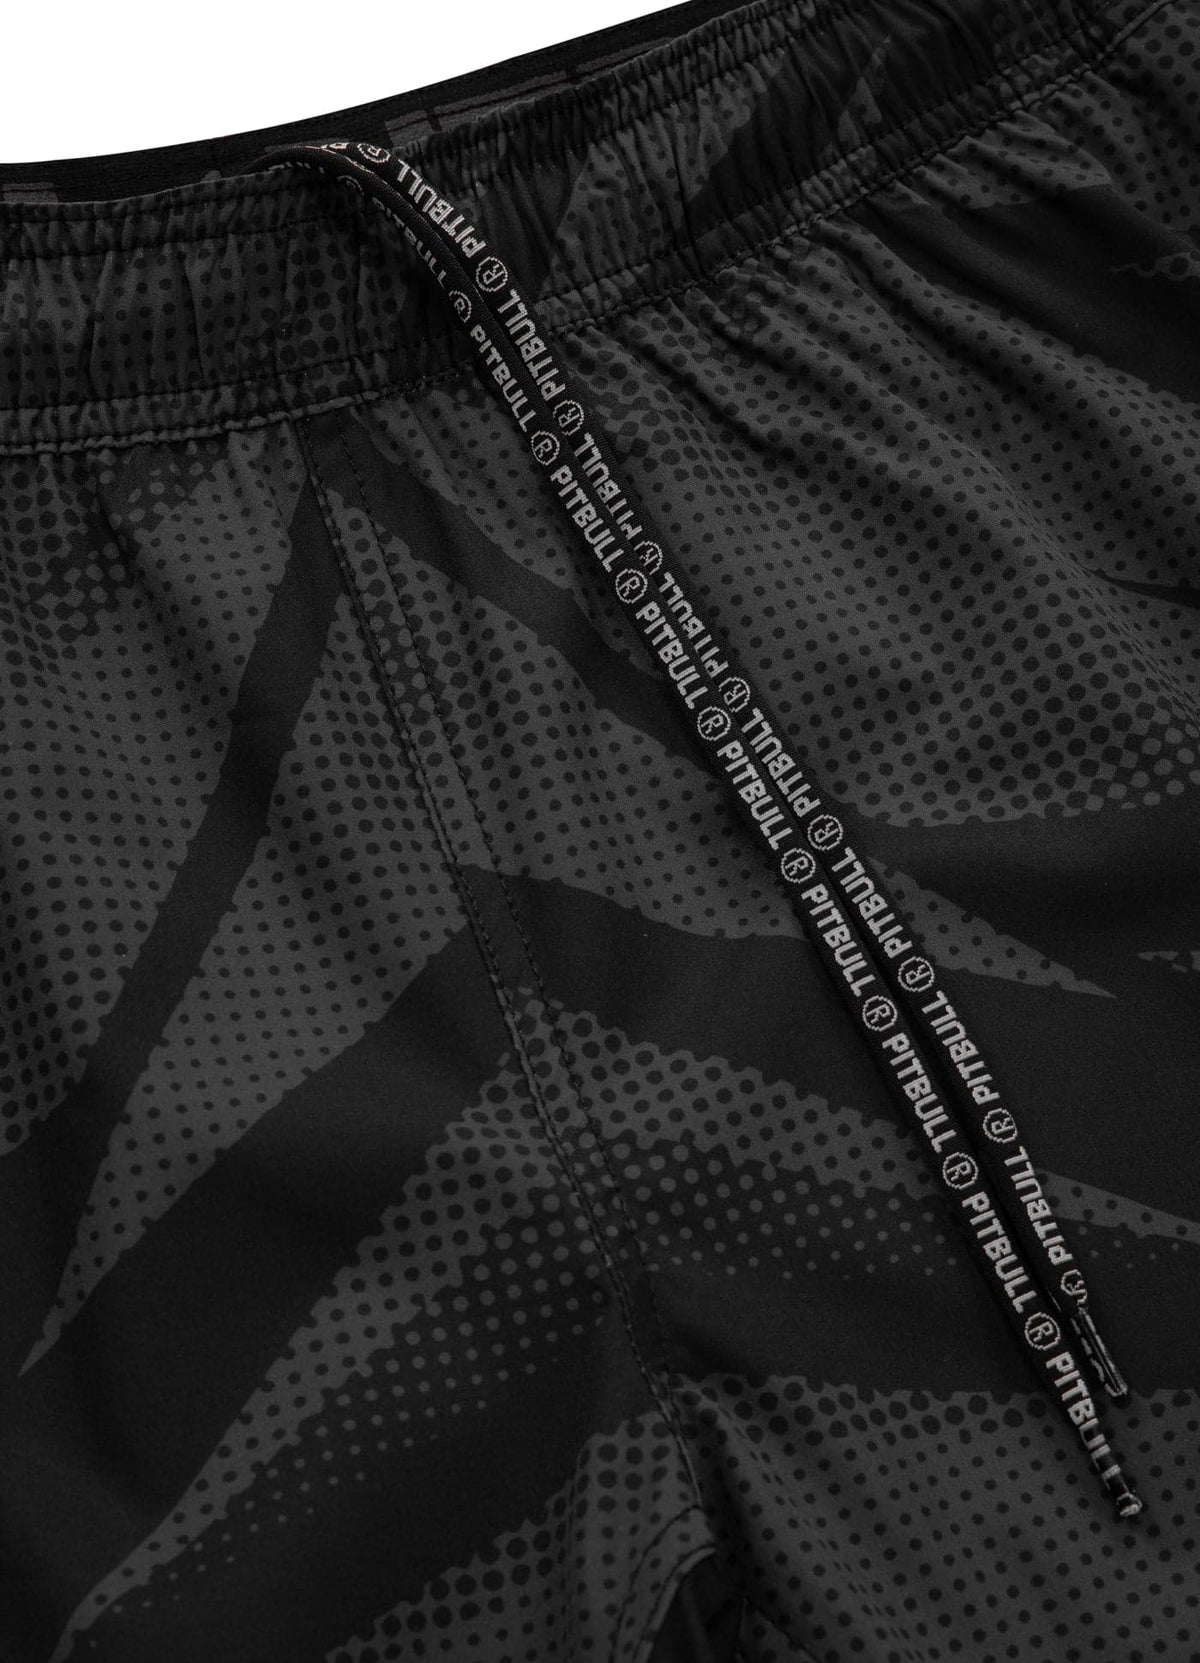 DOT CAMO 2 Black Performance Shorts - Pitbullstore.eu